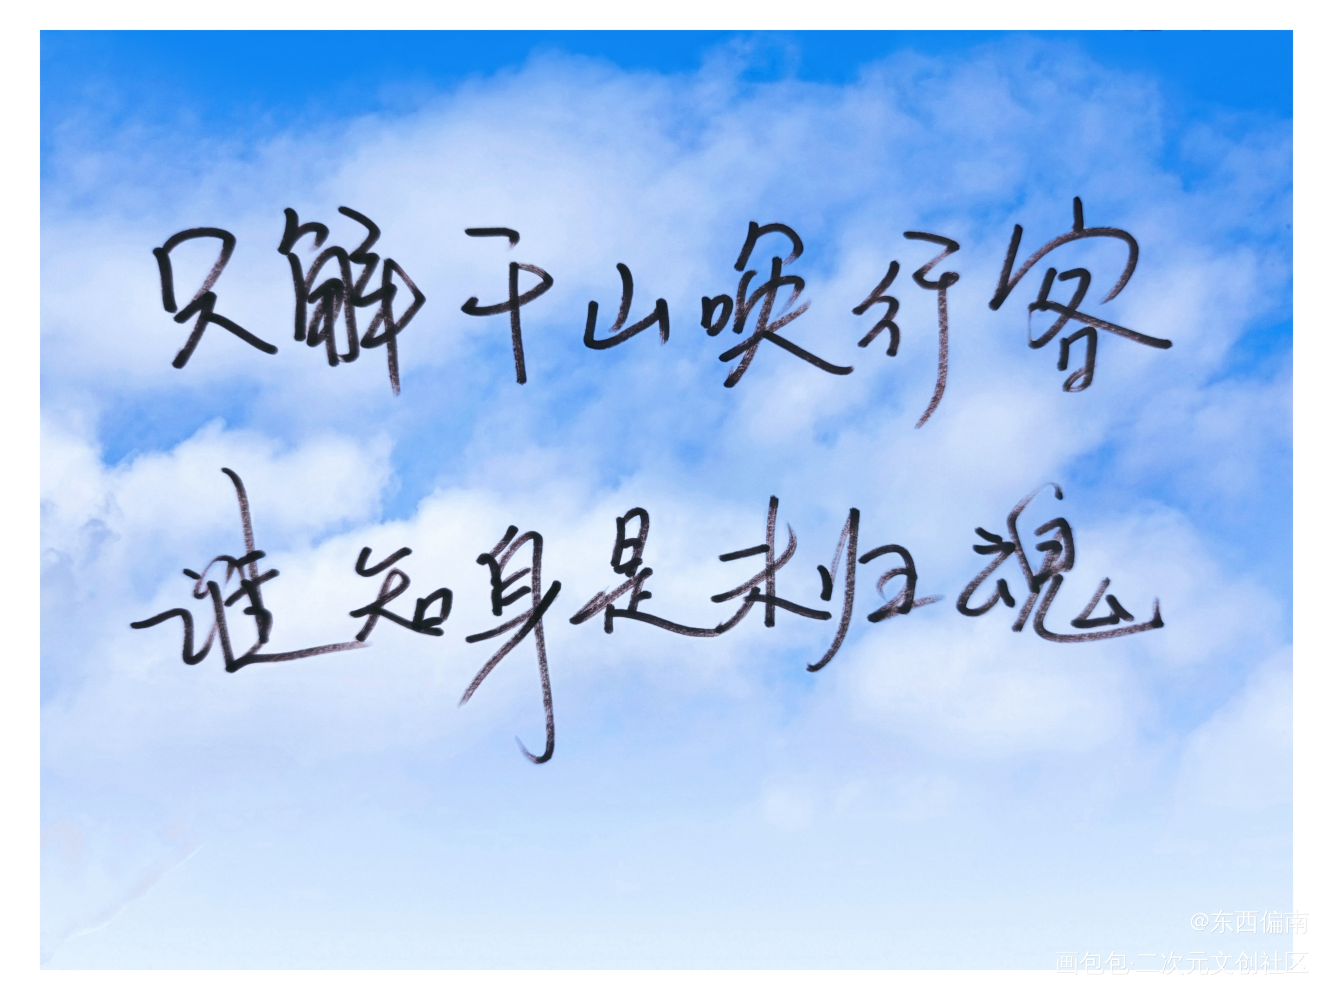 解千山_吞海字体设计见字如晤绘画作品